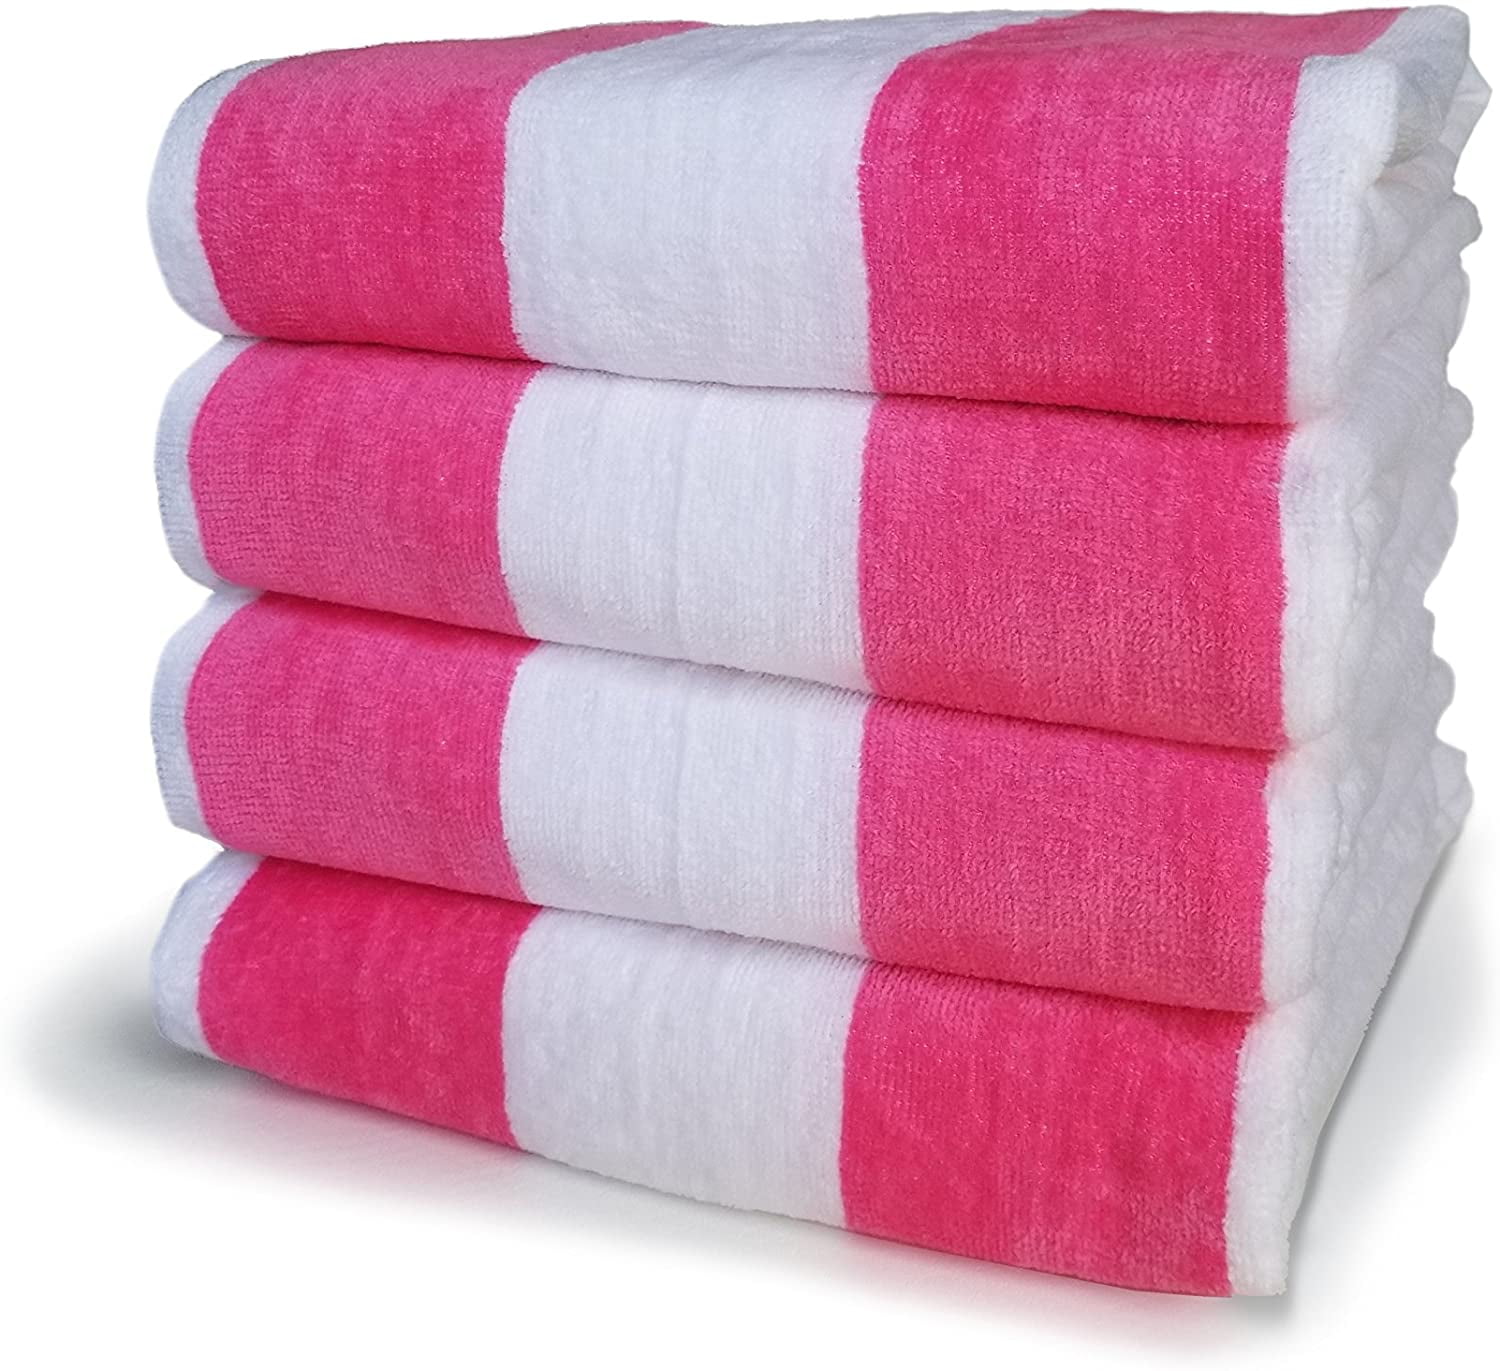 2 jumbo white velour hotel bath sheets towels 30x60 soft velour 11# per dz 